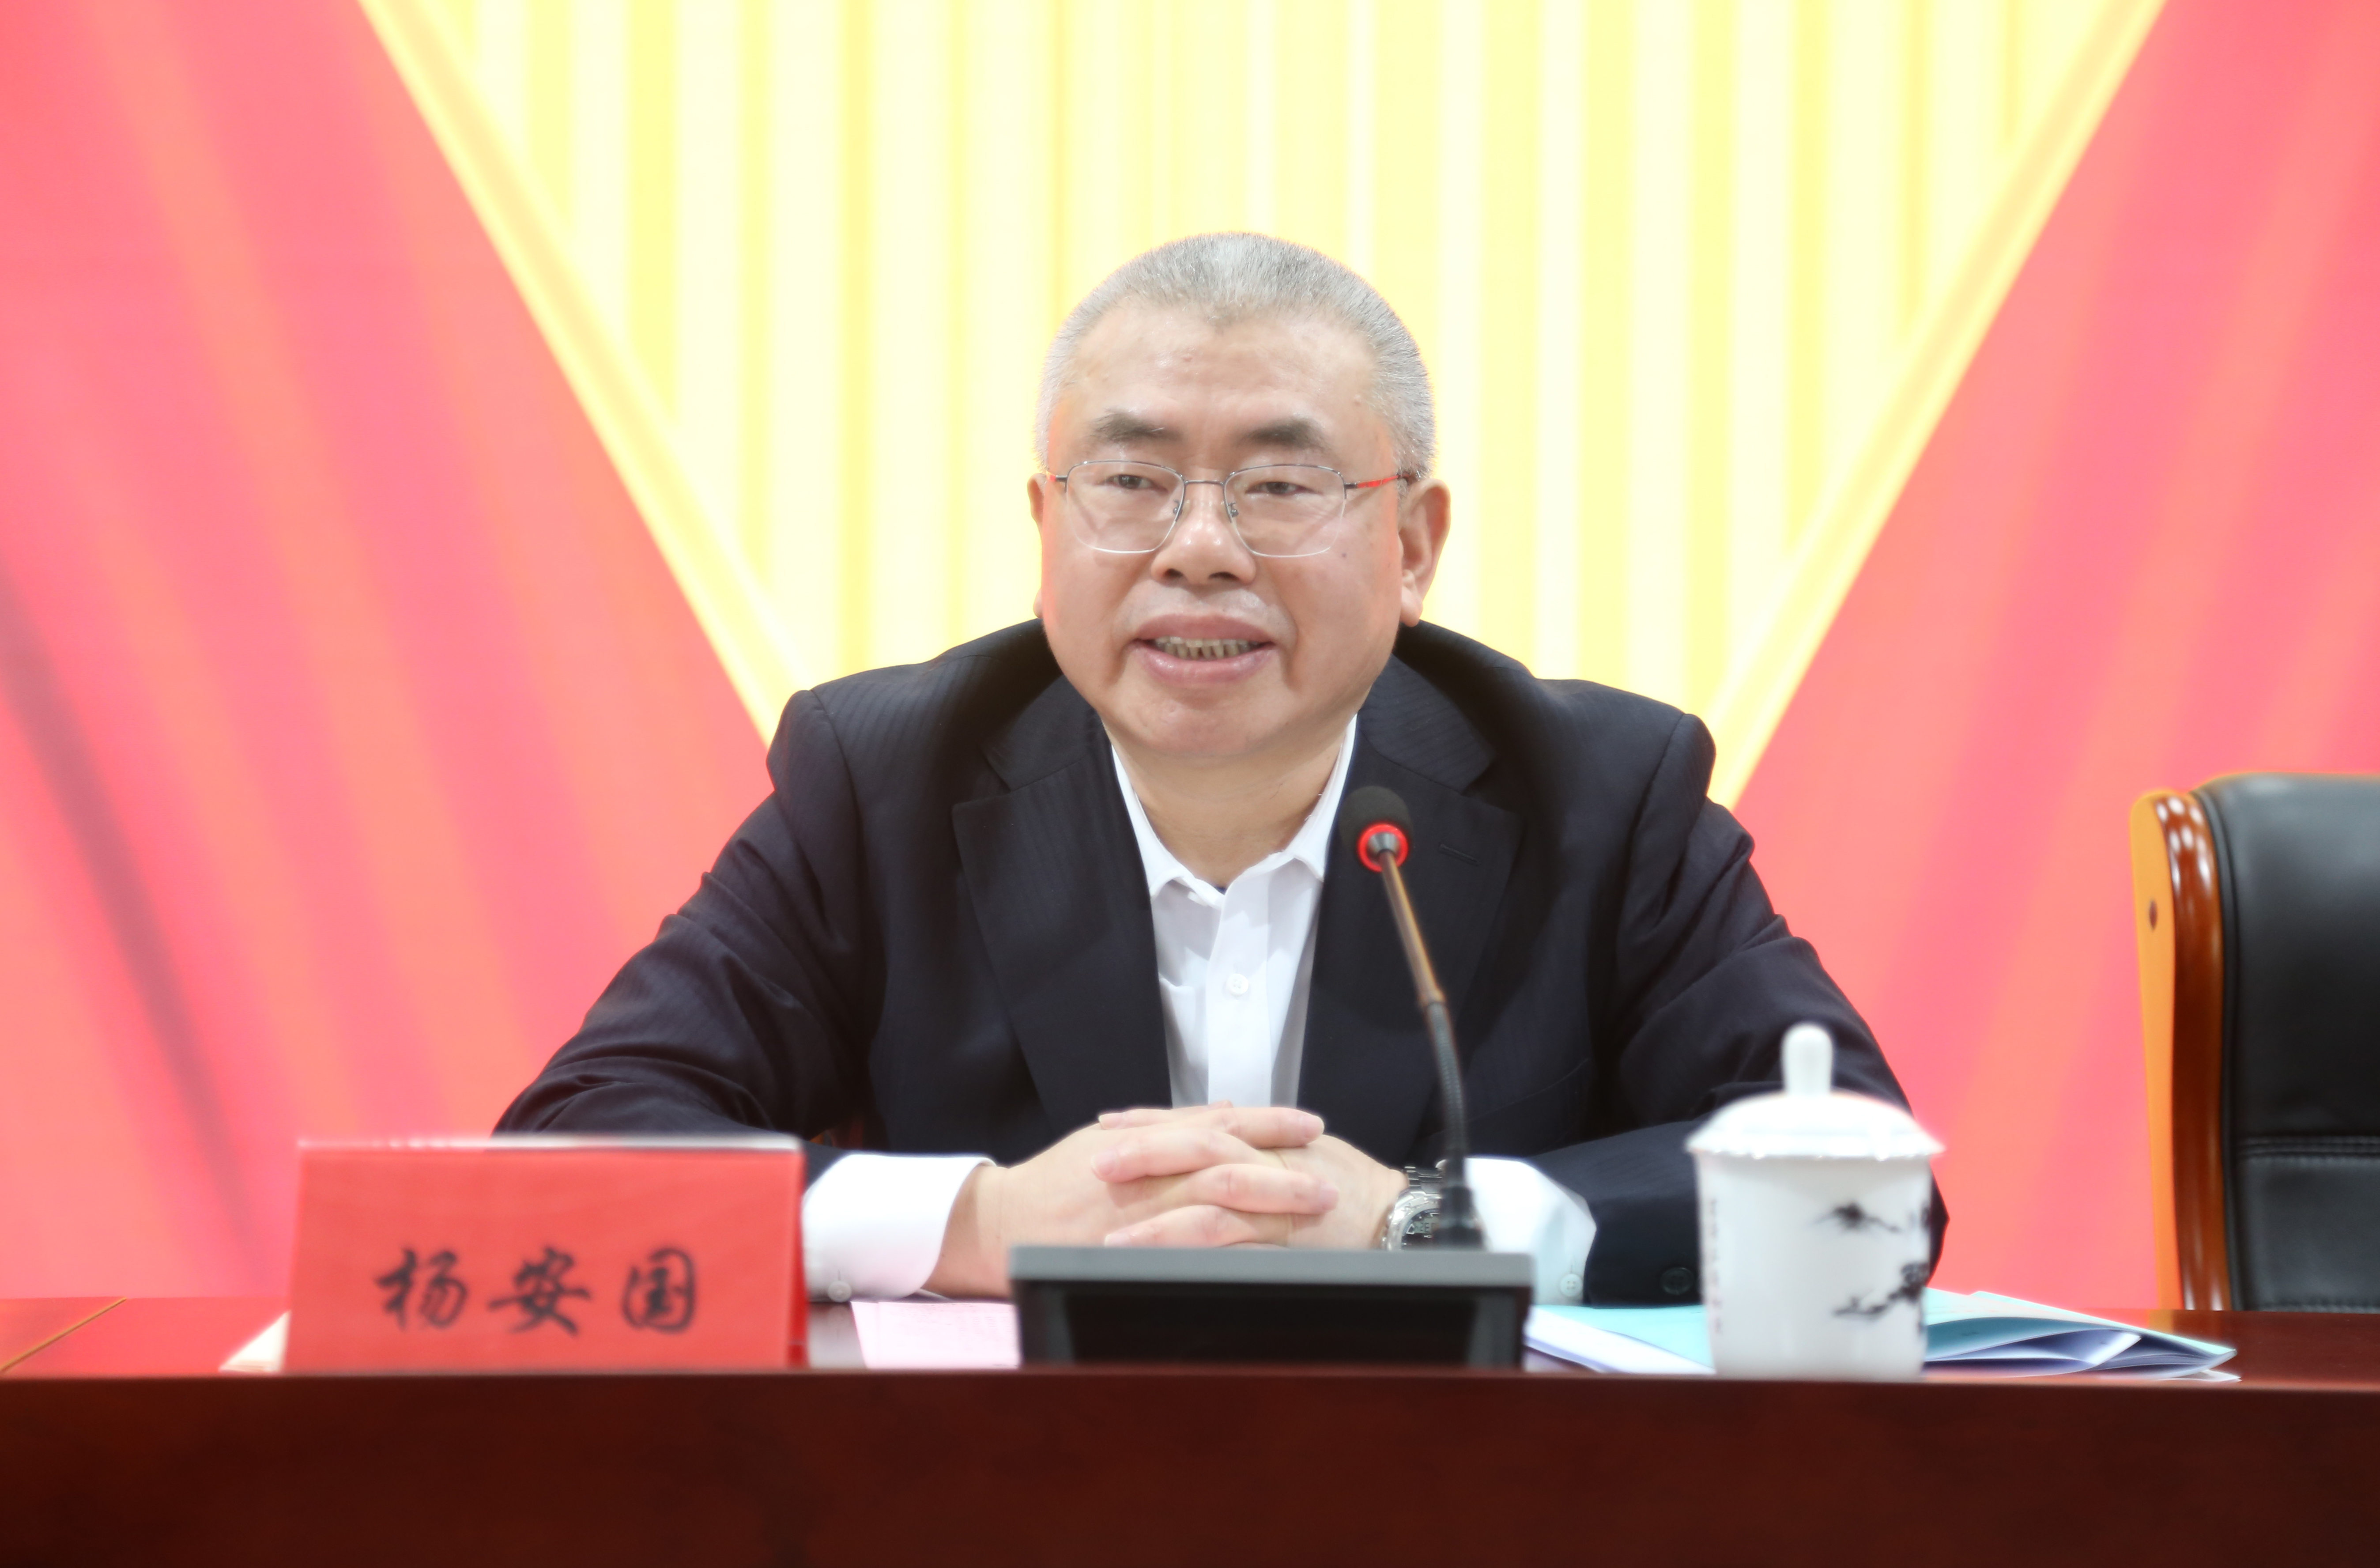 集团企业党委书记、董事长、总经理杨安国出席会议并讲话.JPG